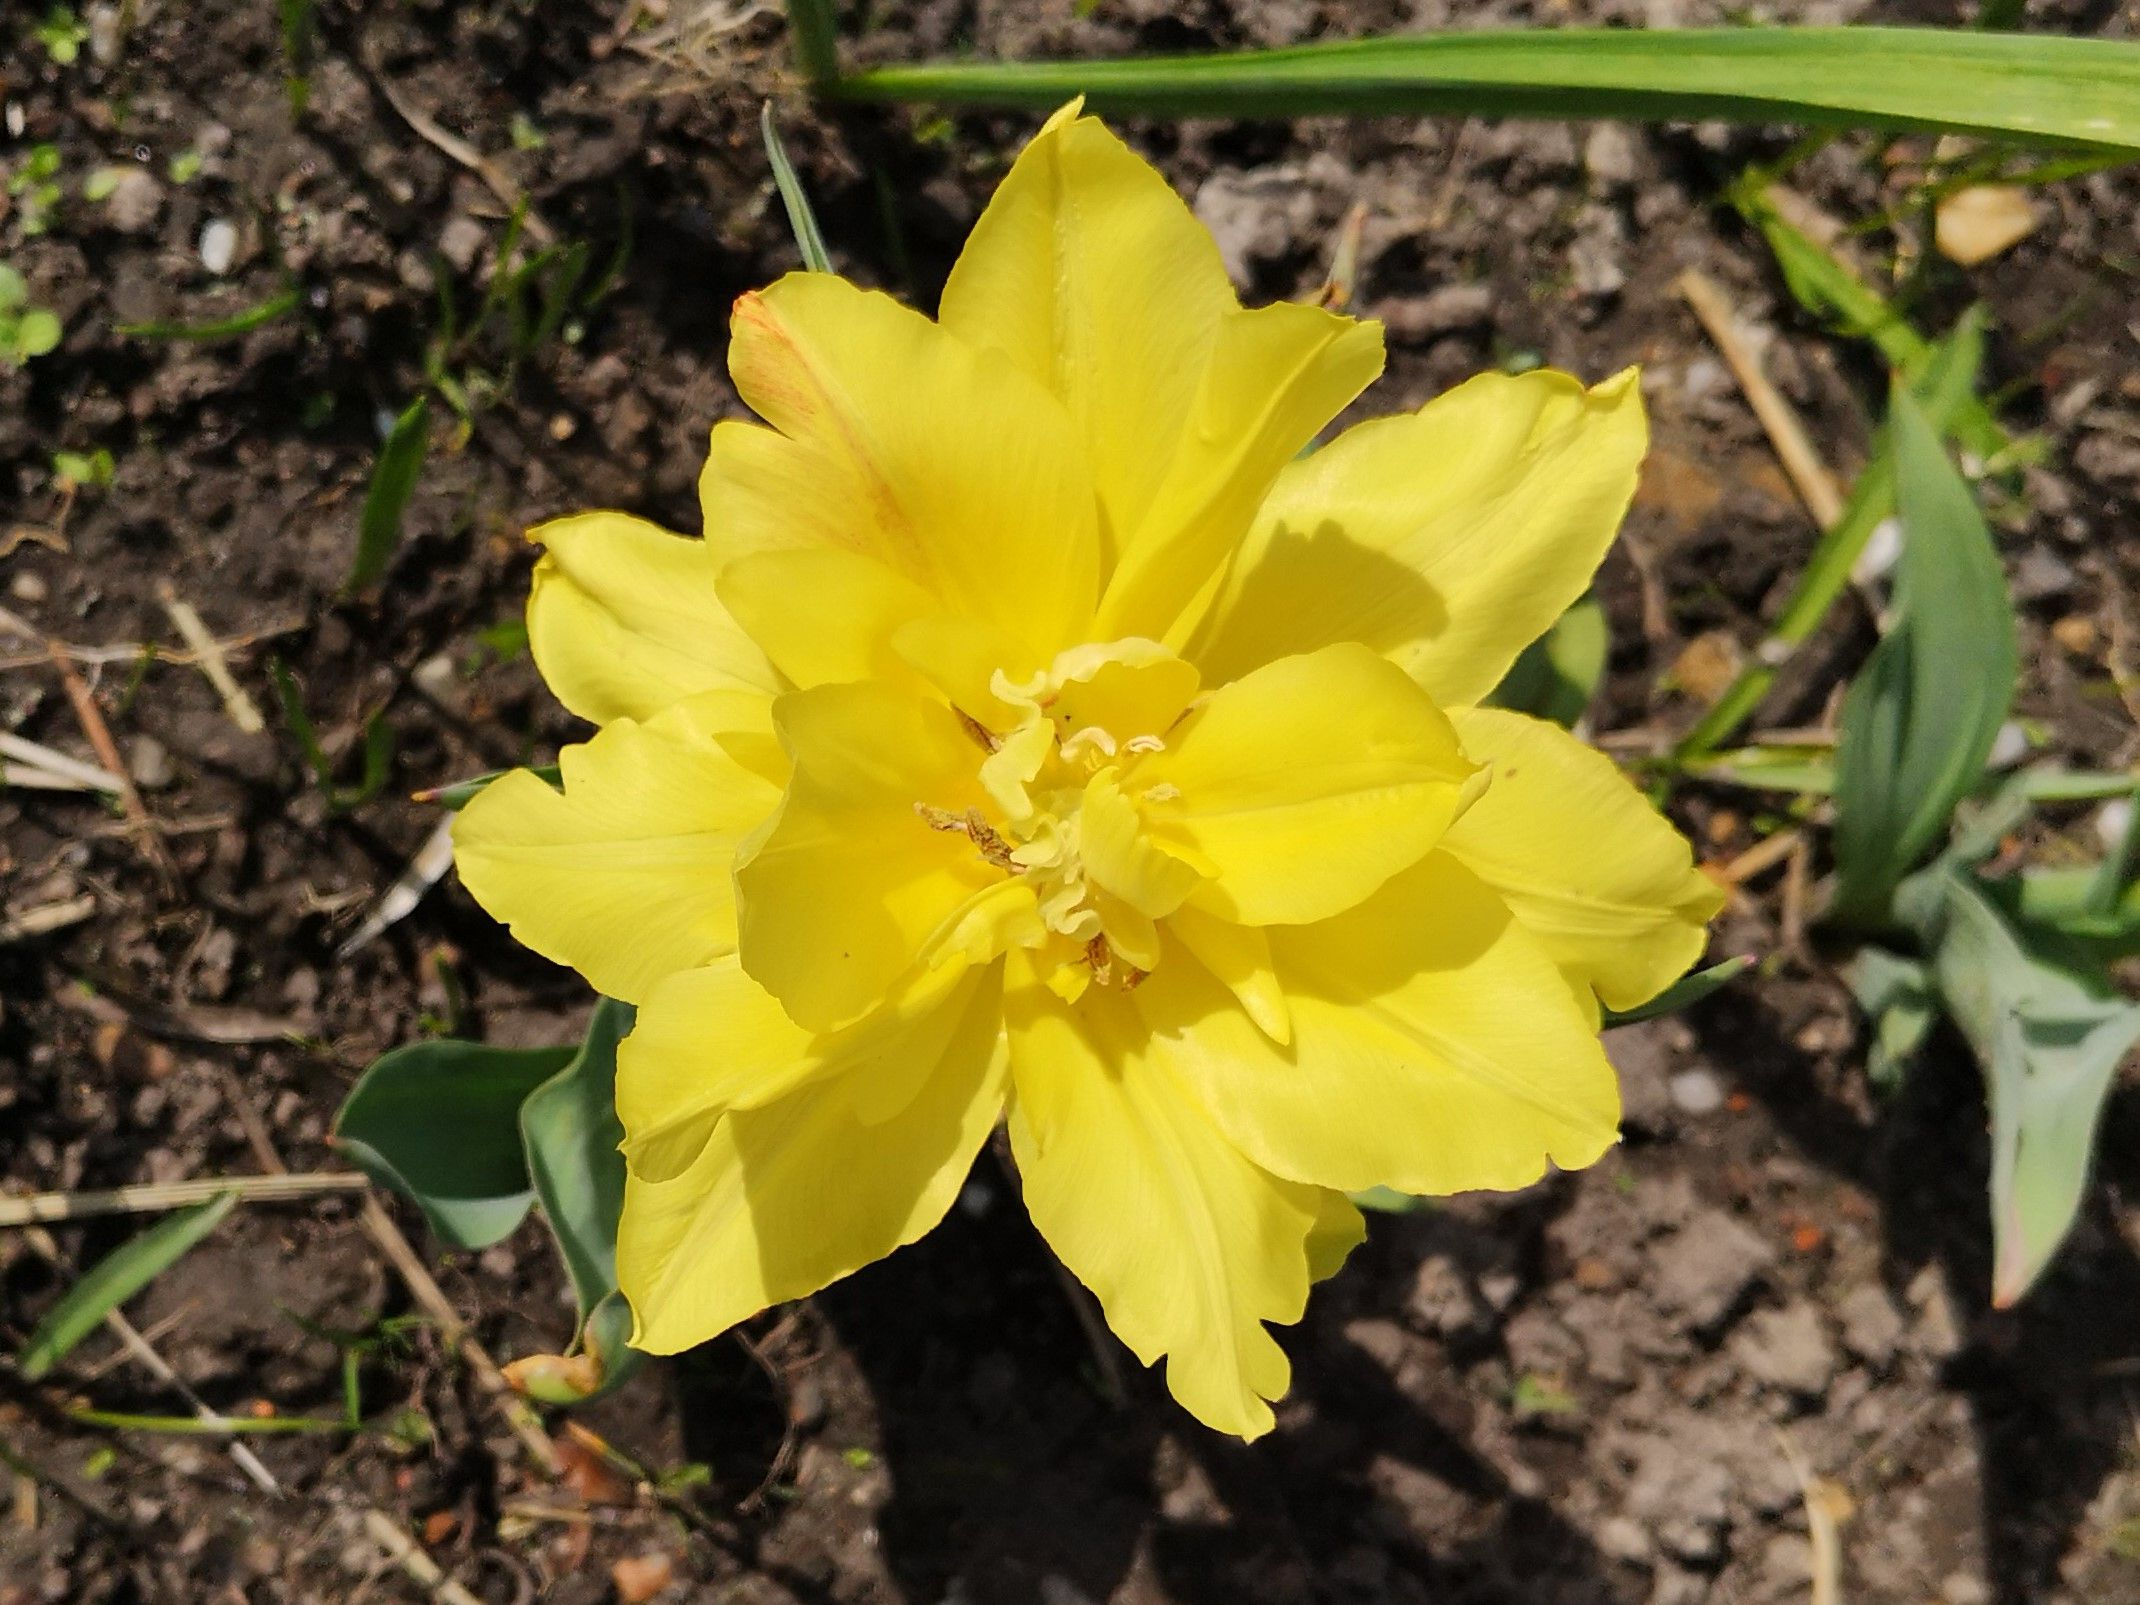 Tulpe gelb gefiedert.jpg